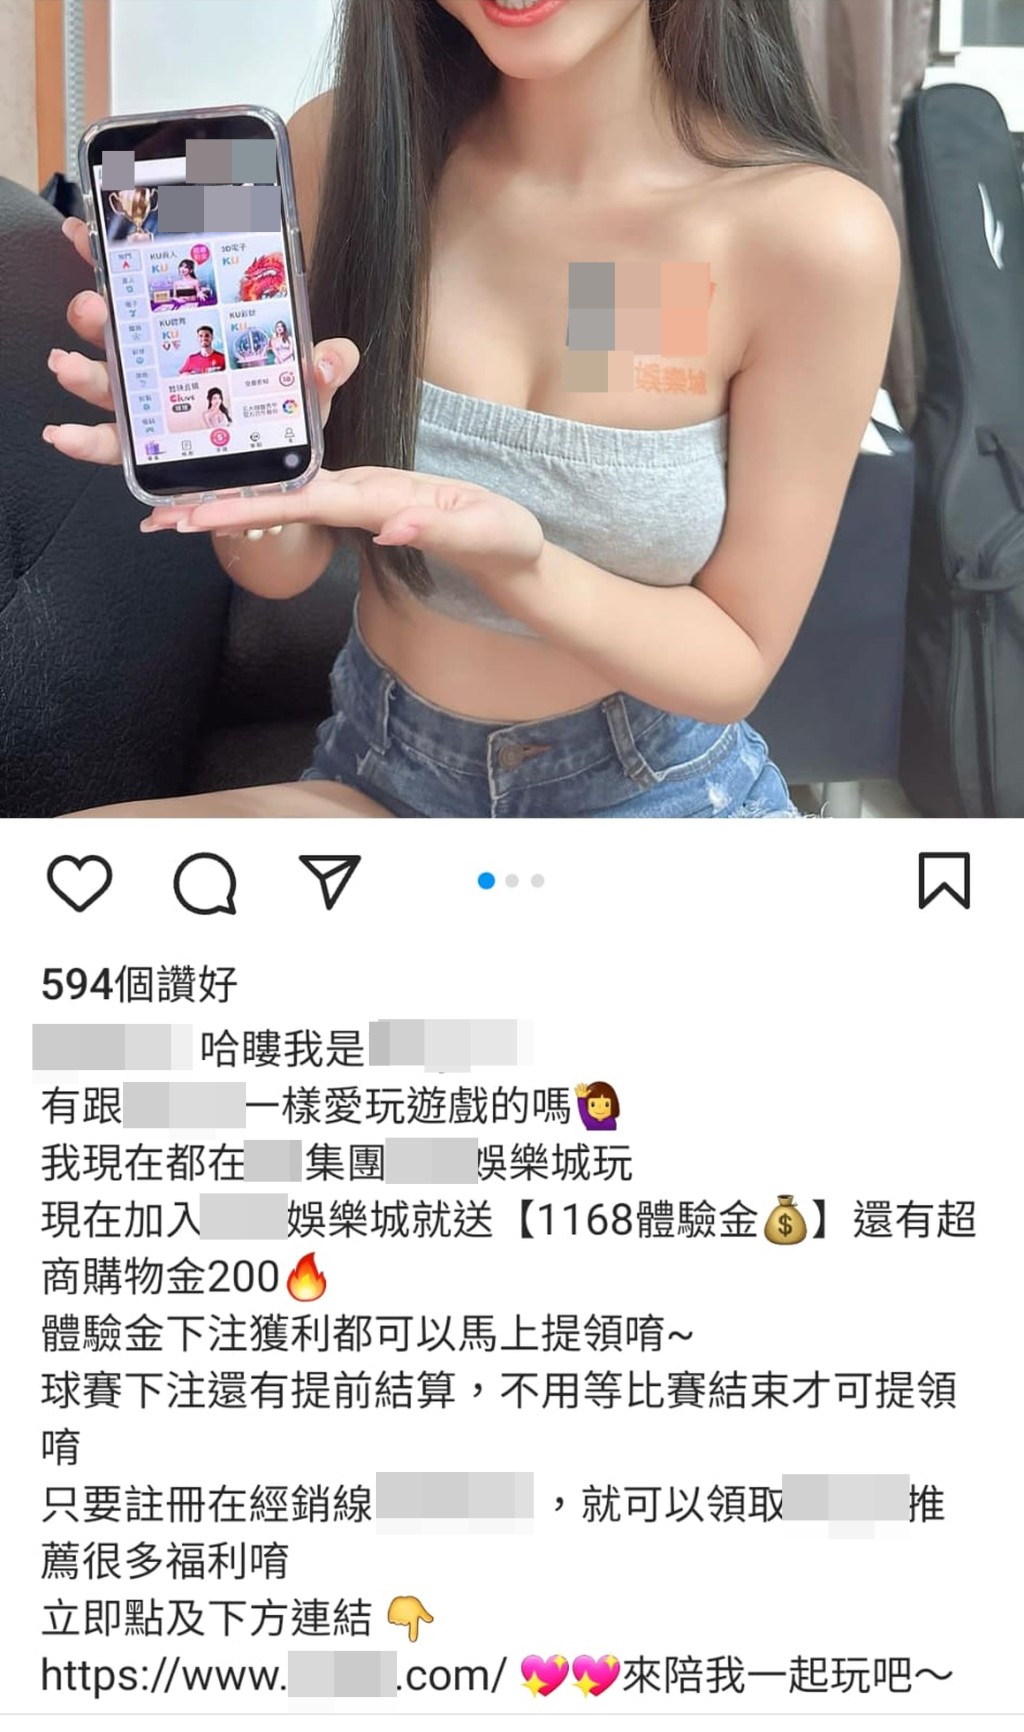 台湾「IG女神」拿起手机，画面显示为赌博网站「XXX娱乐城」的主页。